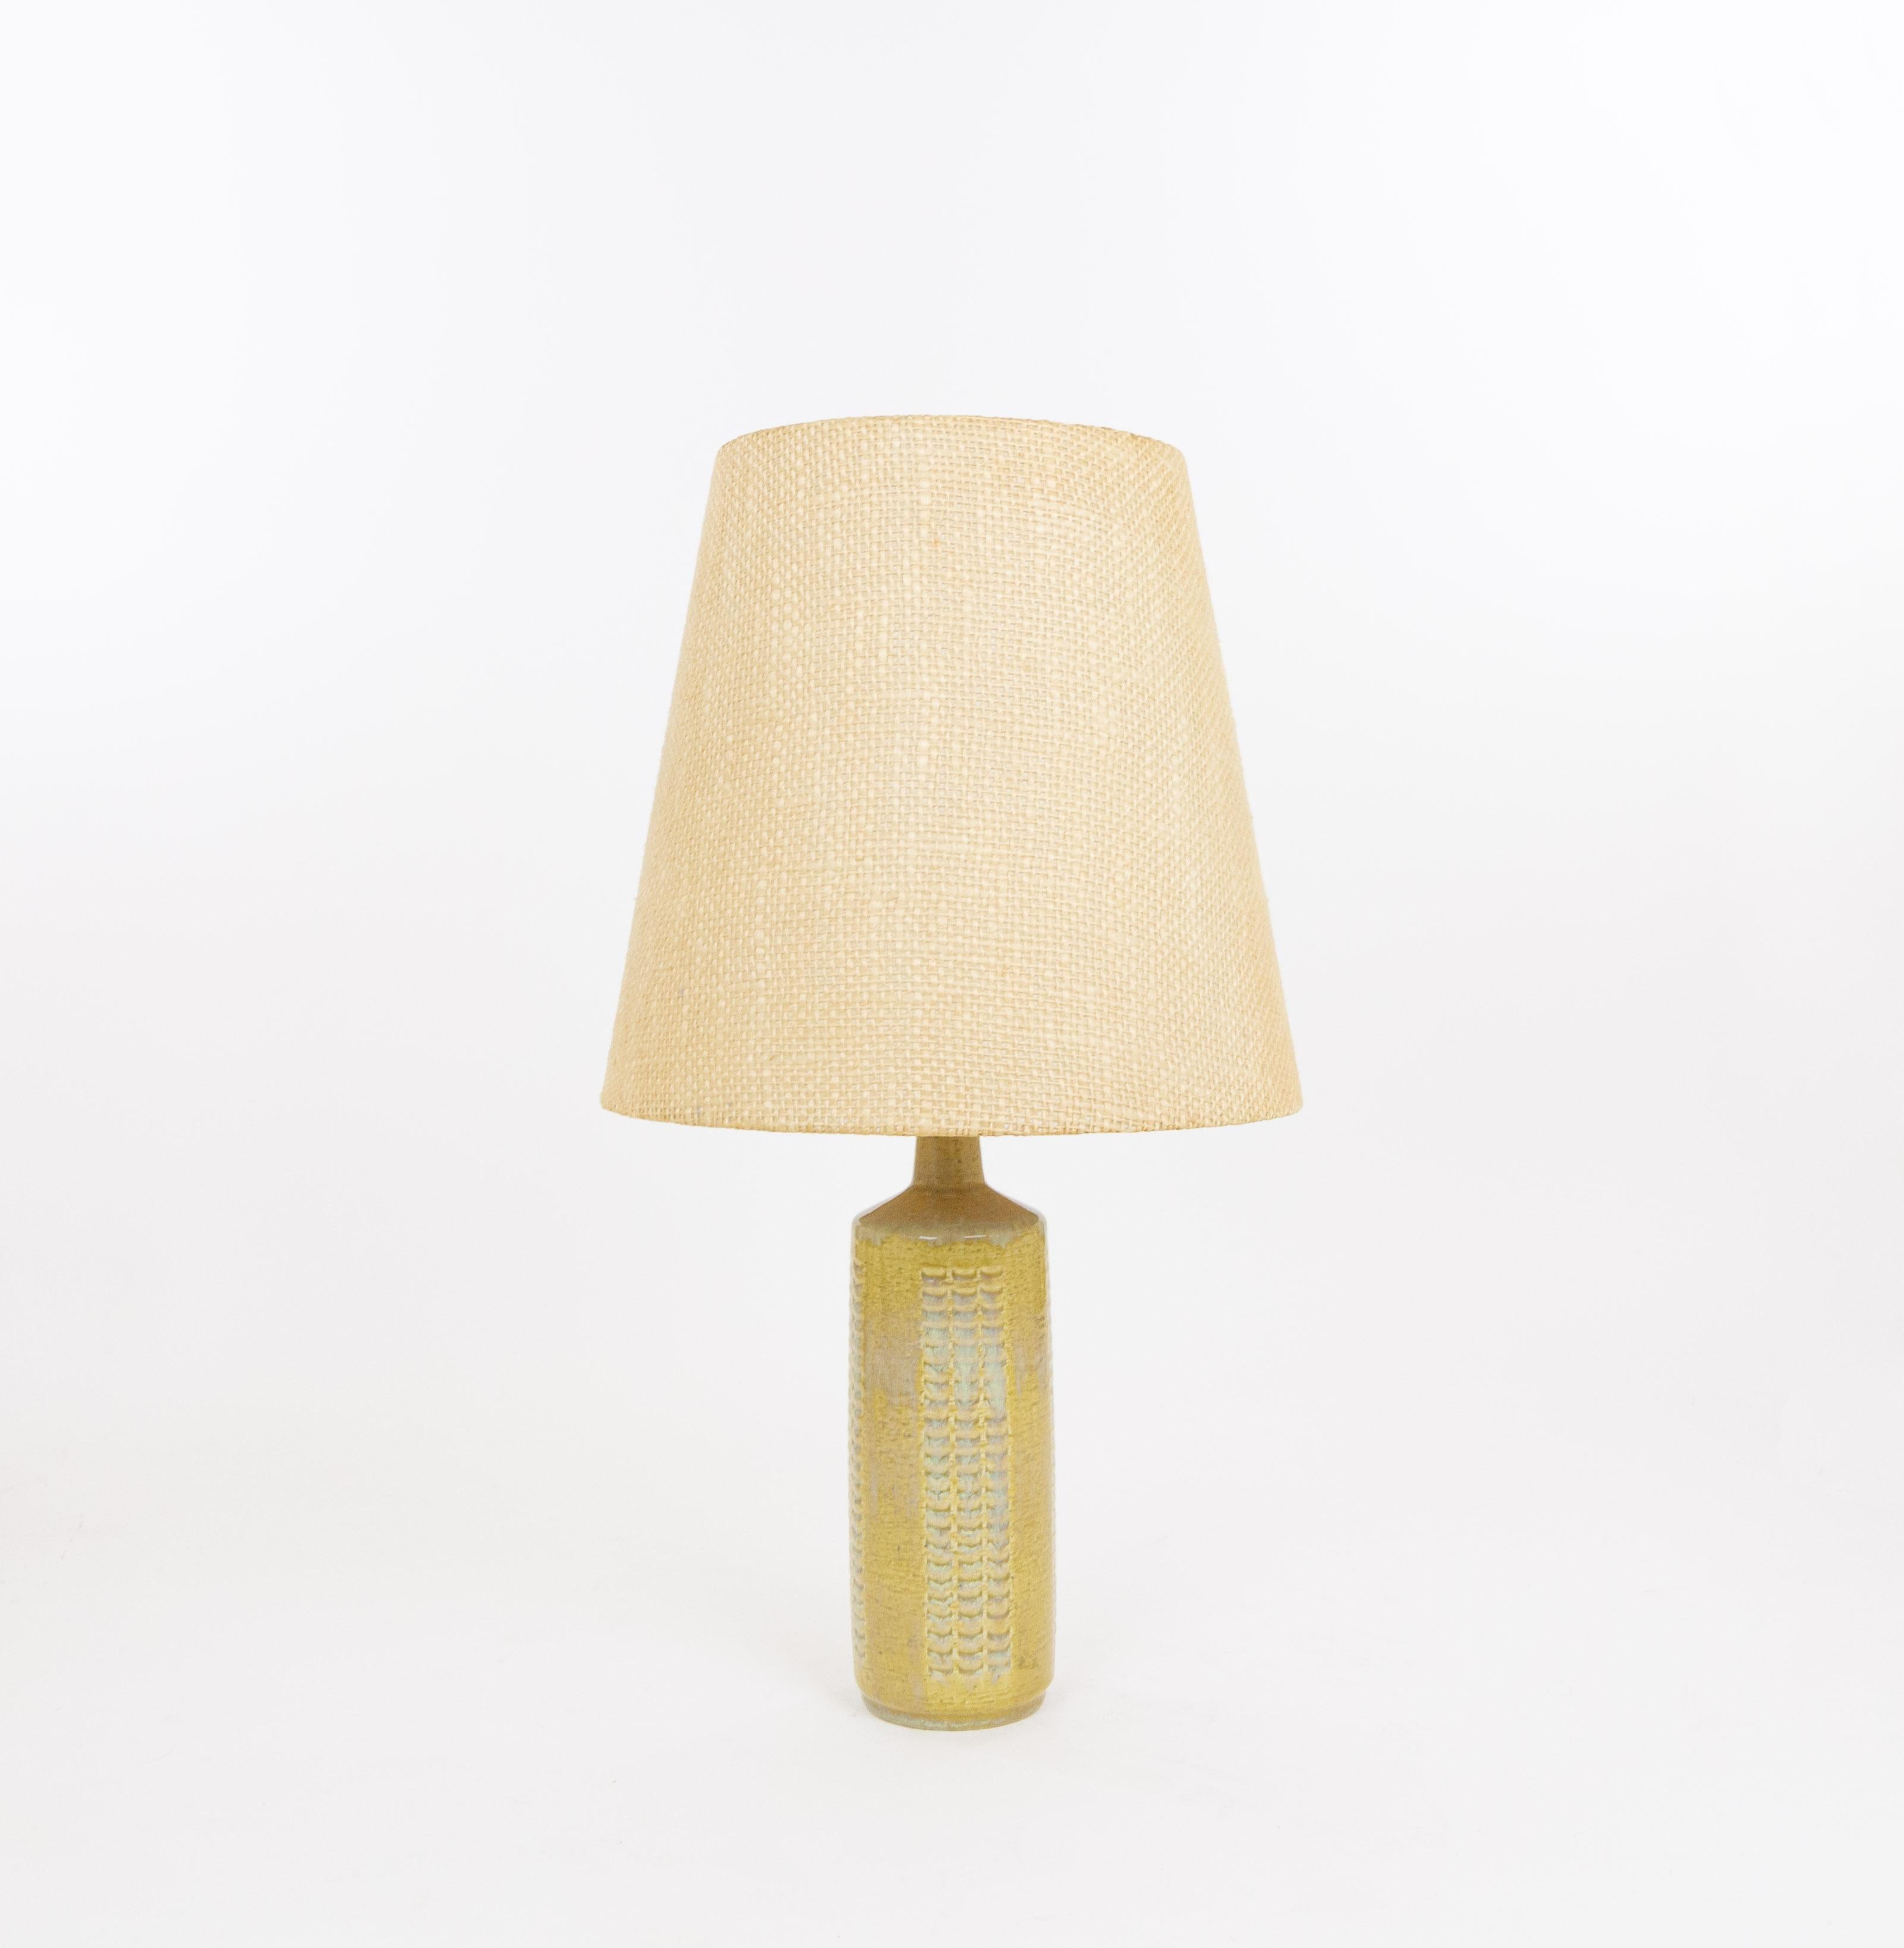 Lampe de table modèle DL/27 réalisée par Annelise et Per Linnemann-Schmidt pour Palshus dans les années 1960. La couleur de la base décorée à la main est Grain. Il présente des motifs impressionnés.

La lampe est livrée avec son support d'abat-jour